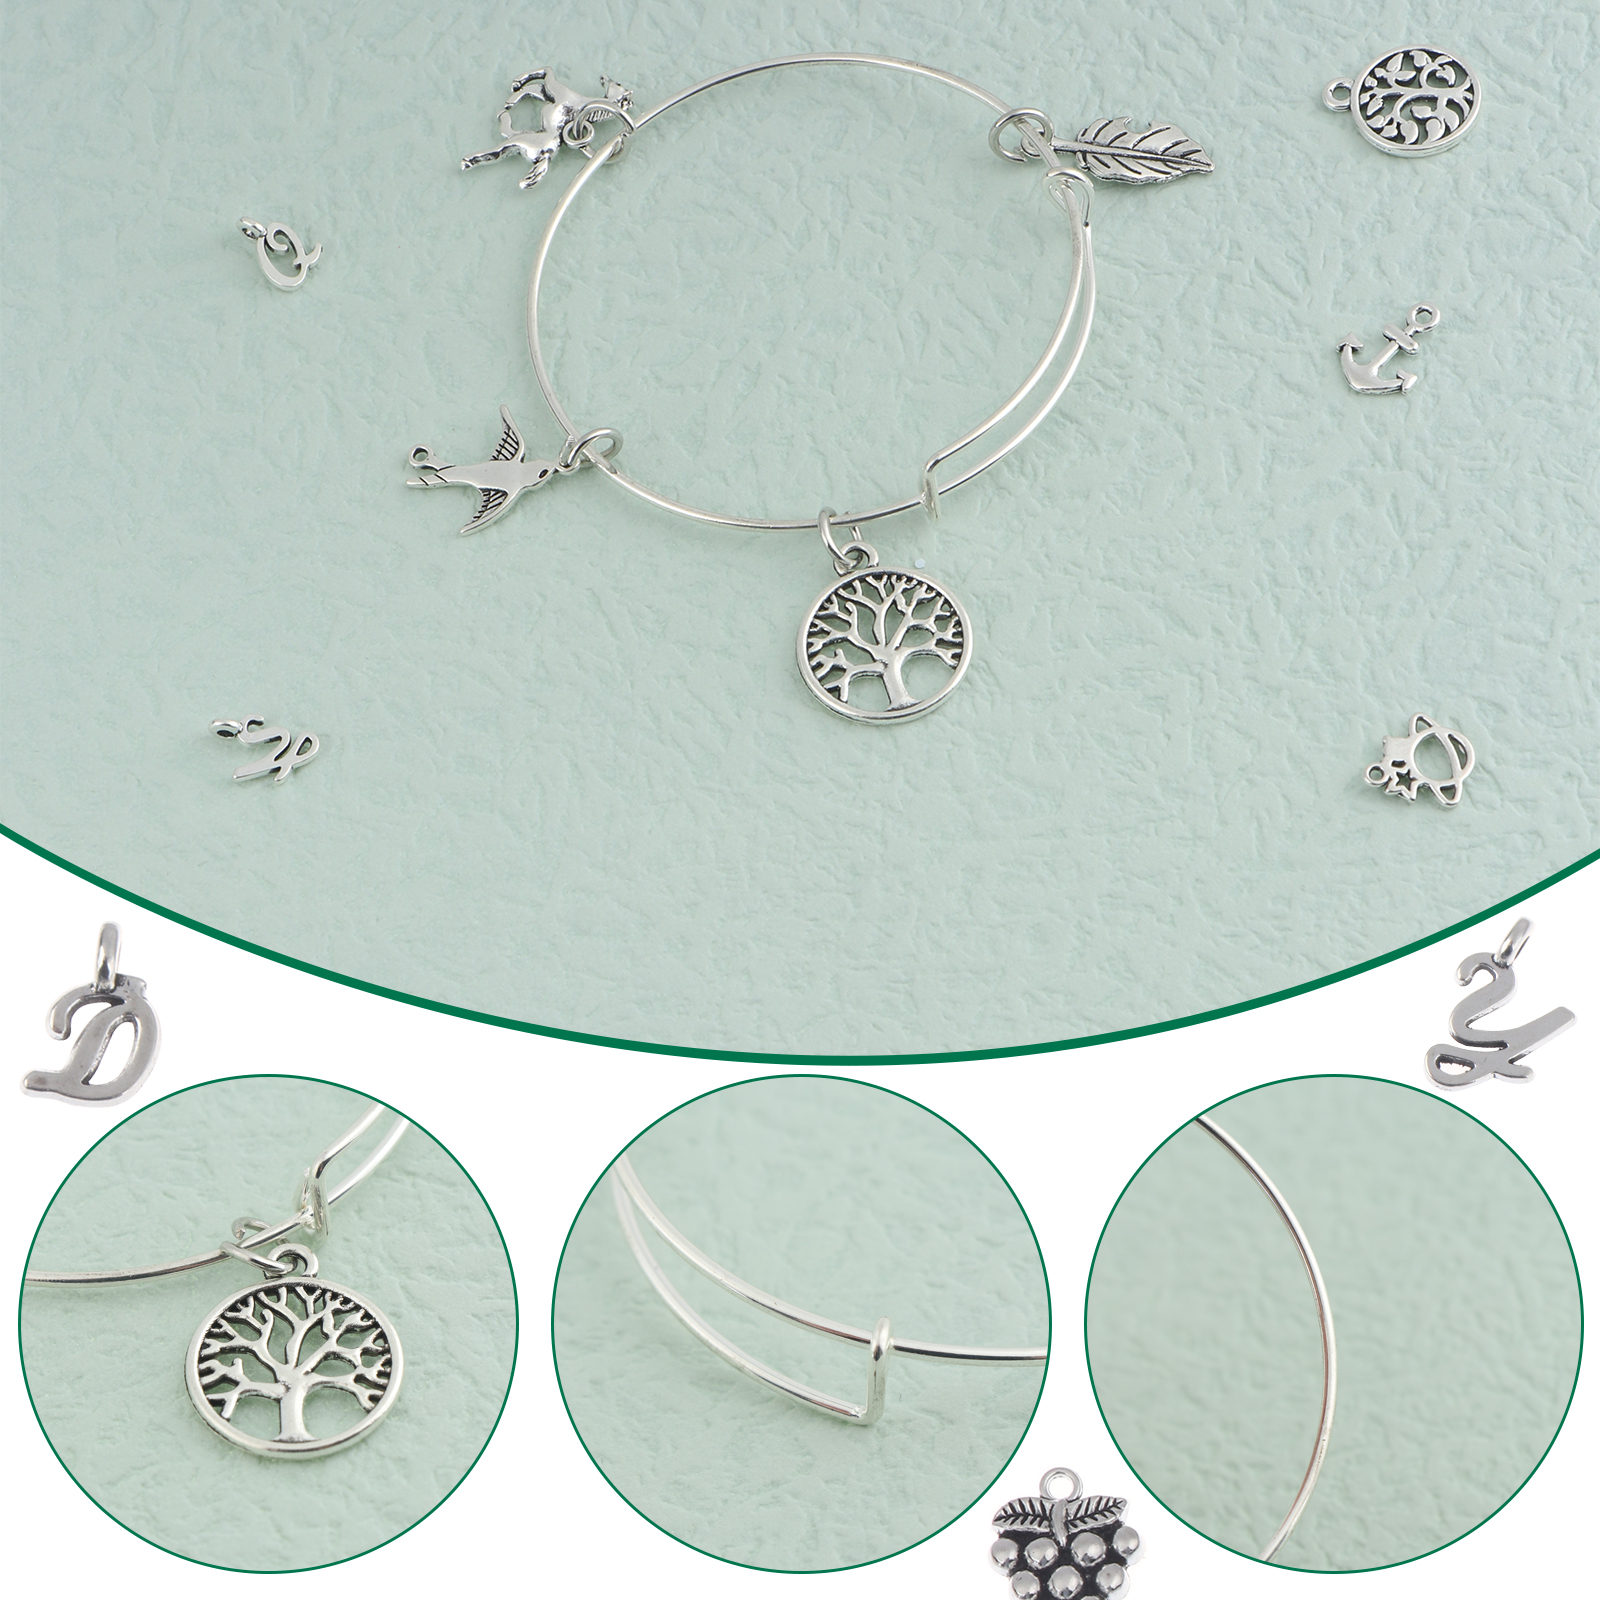 JIANI 562Pcs Bangles Bracelet Making Kit, 10Pcs Expandable Bangle Bracelets  with 52Pcs